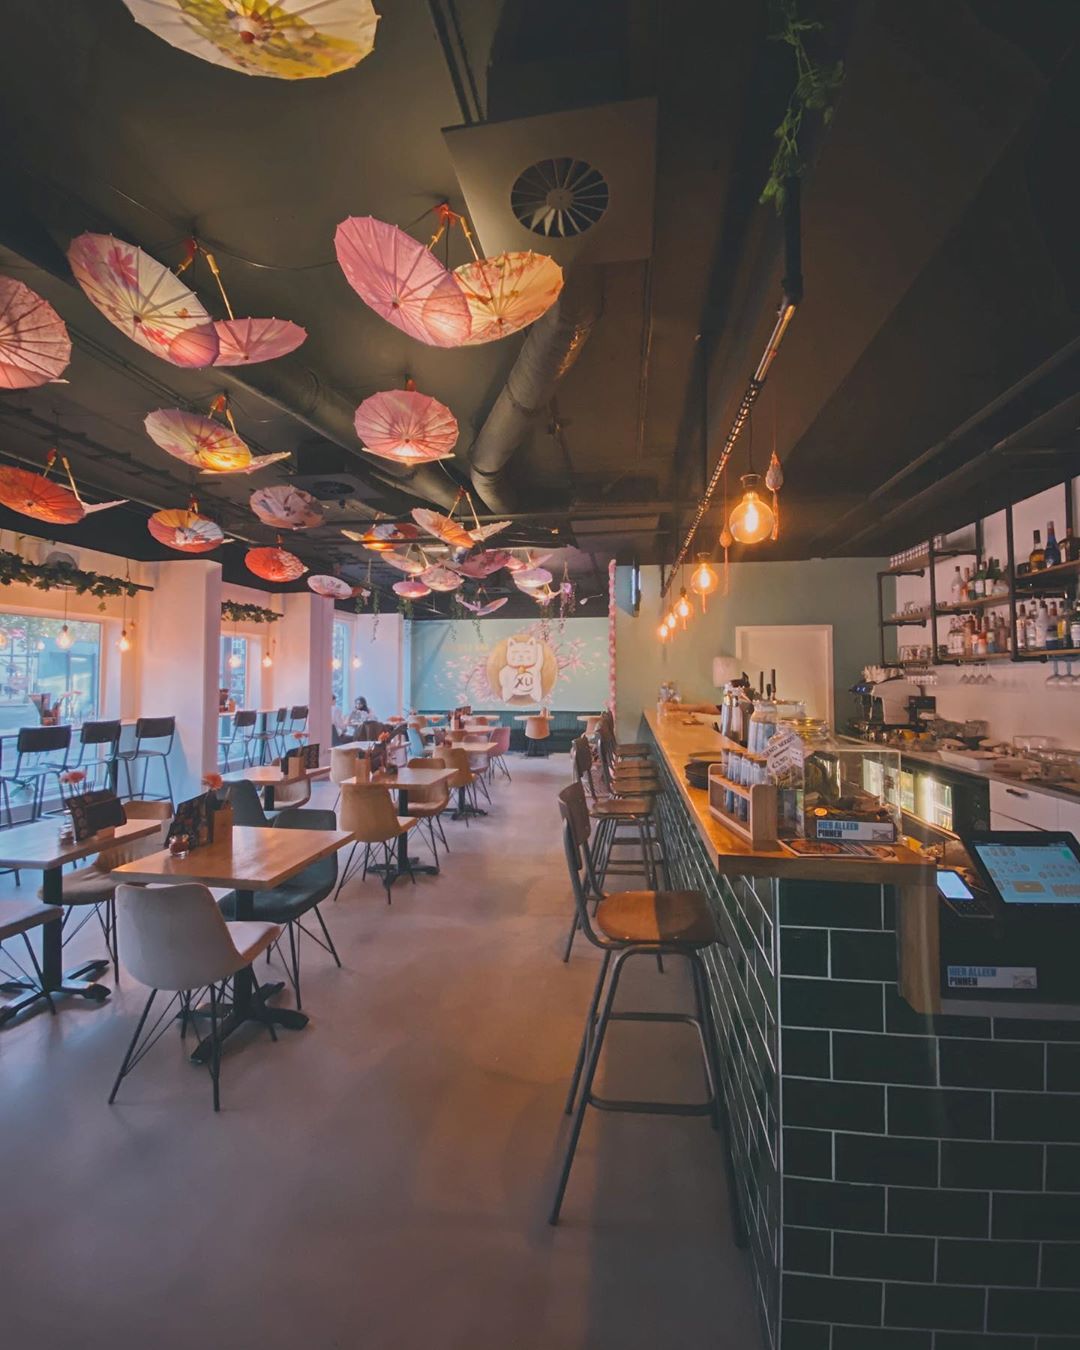 Sfeerimpressie van Xu Noodle Bar?. Wat vinden jullie van ons interieur?!
.
. .
.
#Interior #Design #Asian #XuNoodleBar #Tilburg #Noodles #Gigameubel